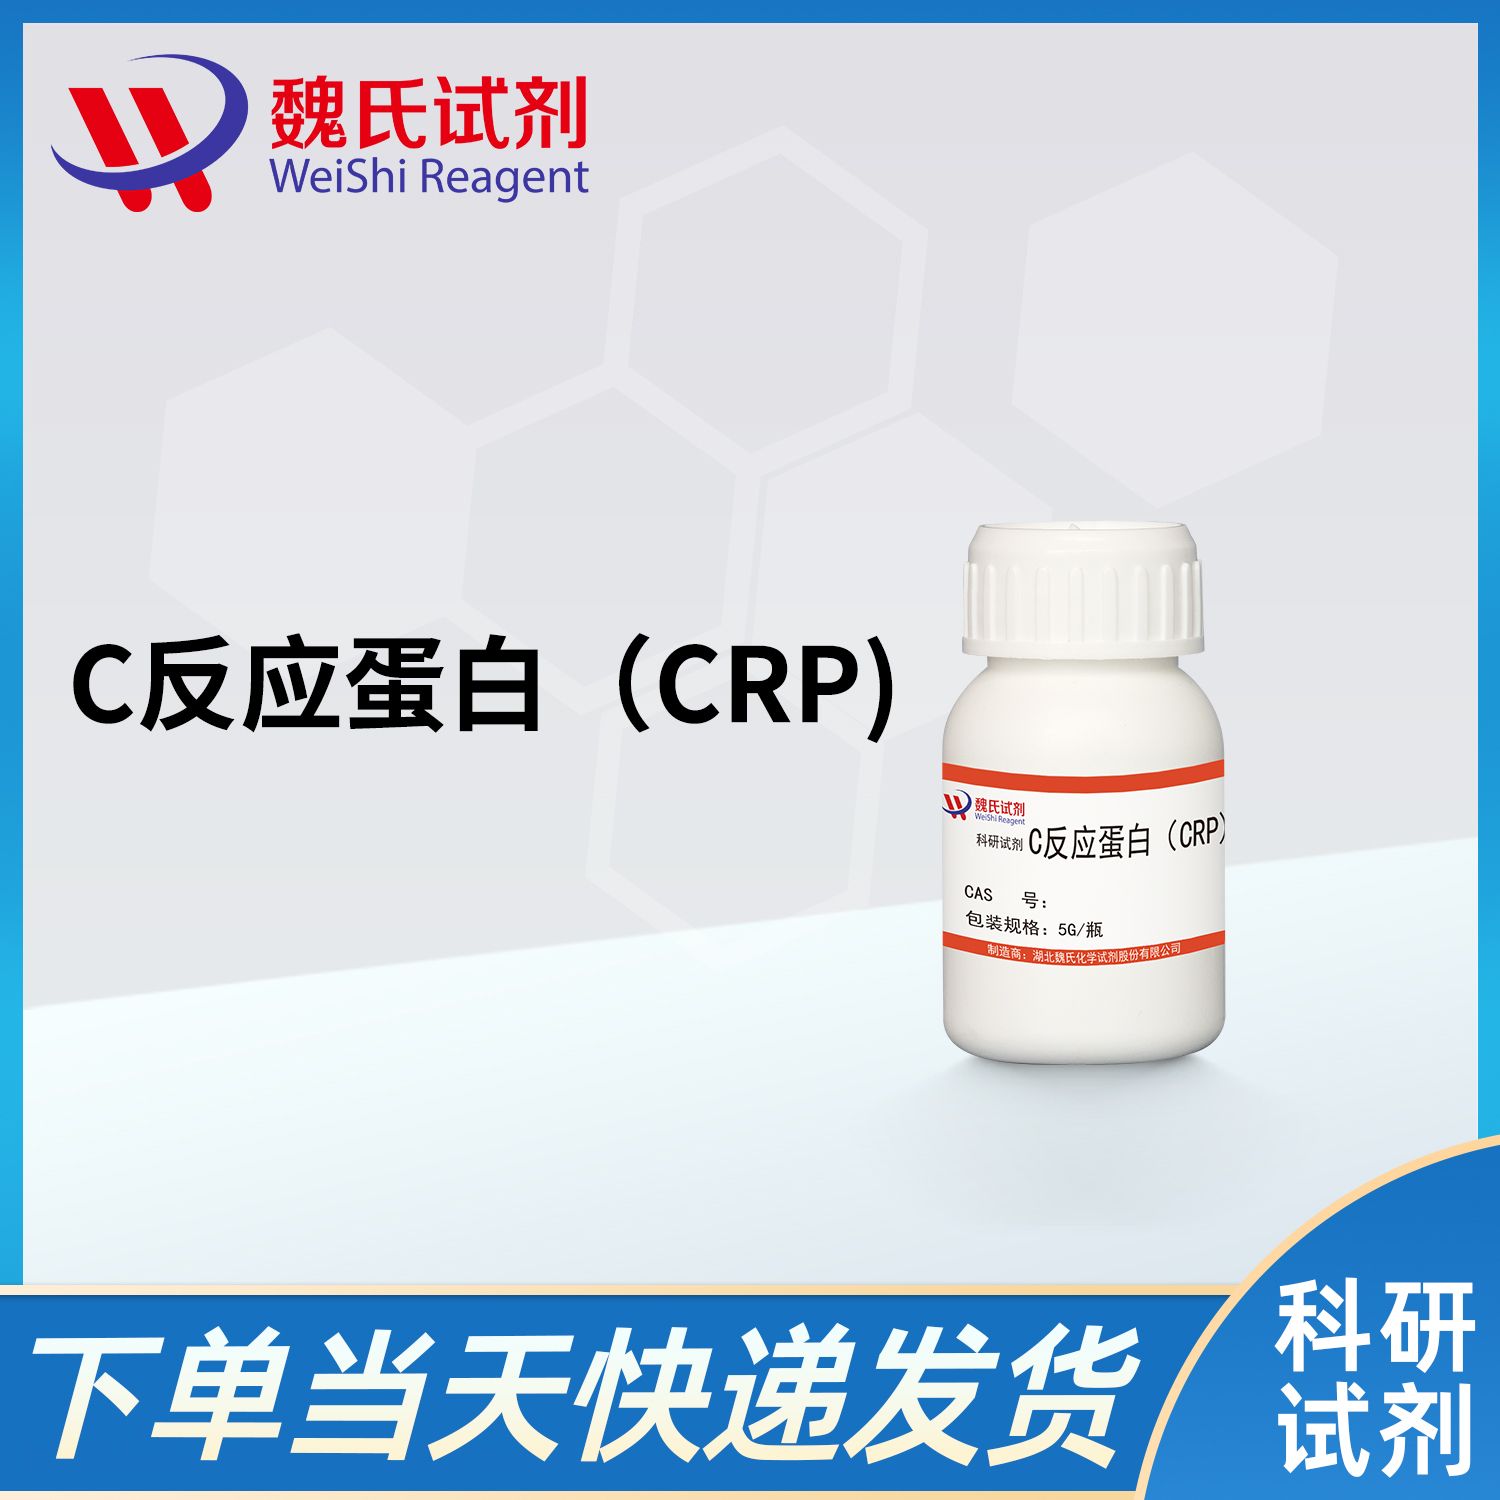 C反应蛋白（CRP)/C-Reactive protein（CRP）